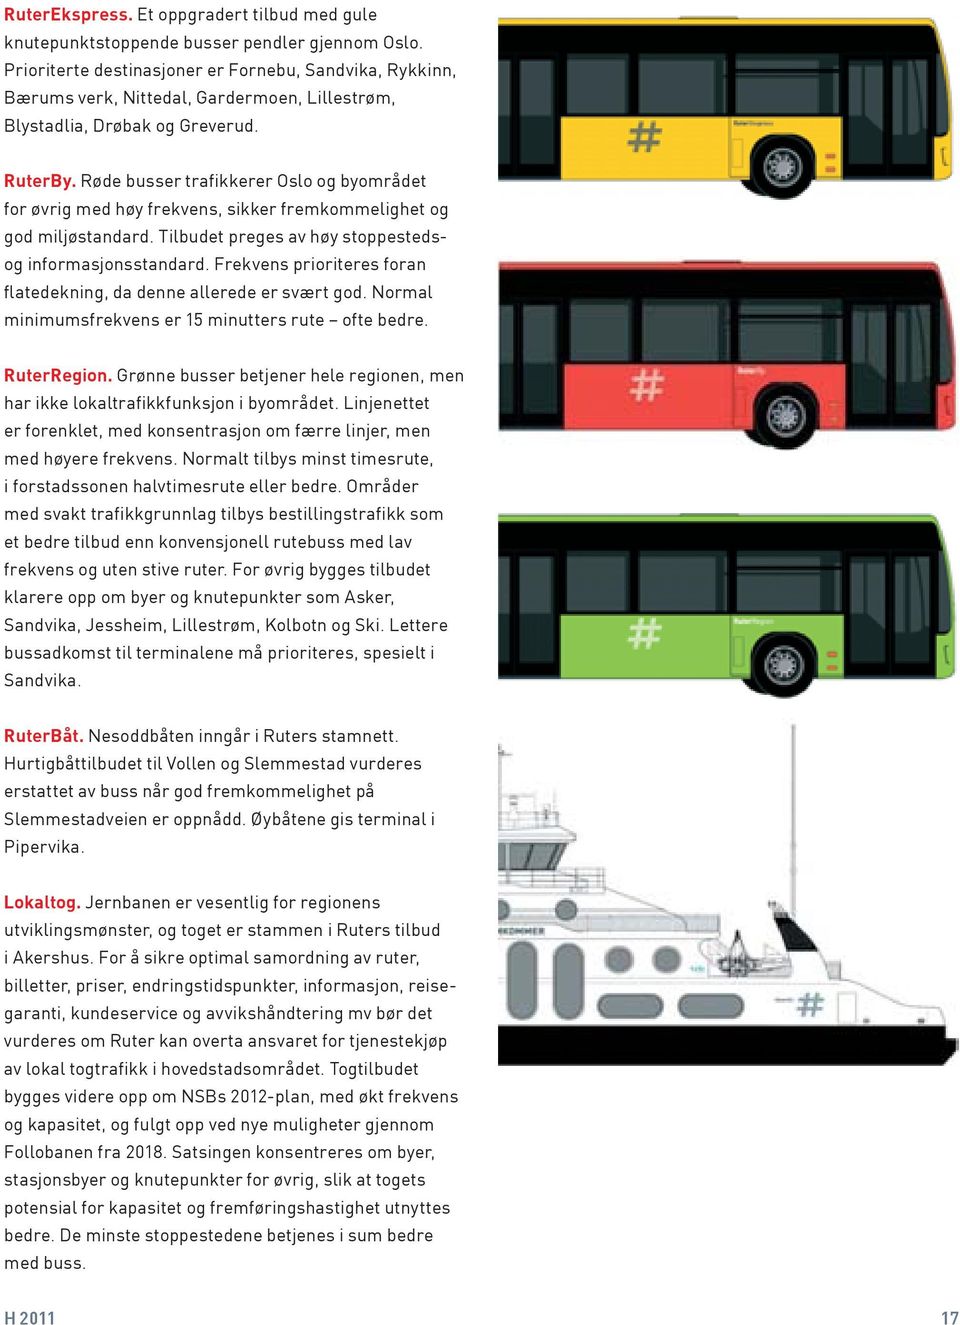 Røde busser trafikkerer Oslo og byområdet for øvrig med høy frekvens, sikker fremkommelighet og god miljøstandard. Tilbudet preges av høy stoppestedsog informasjonsstandard.